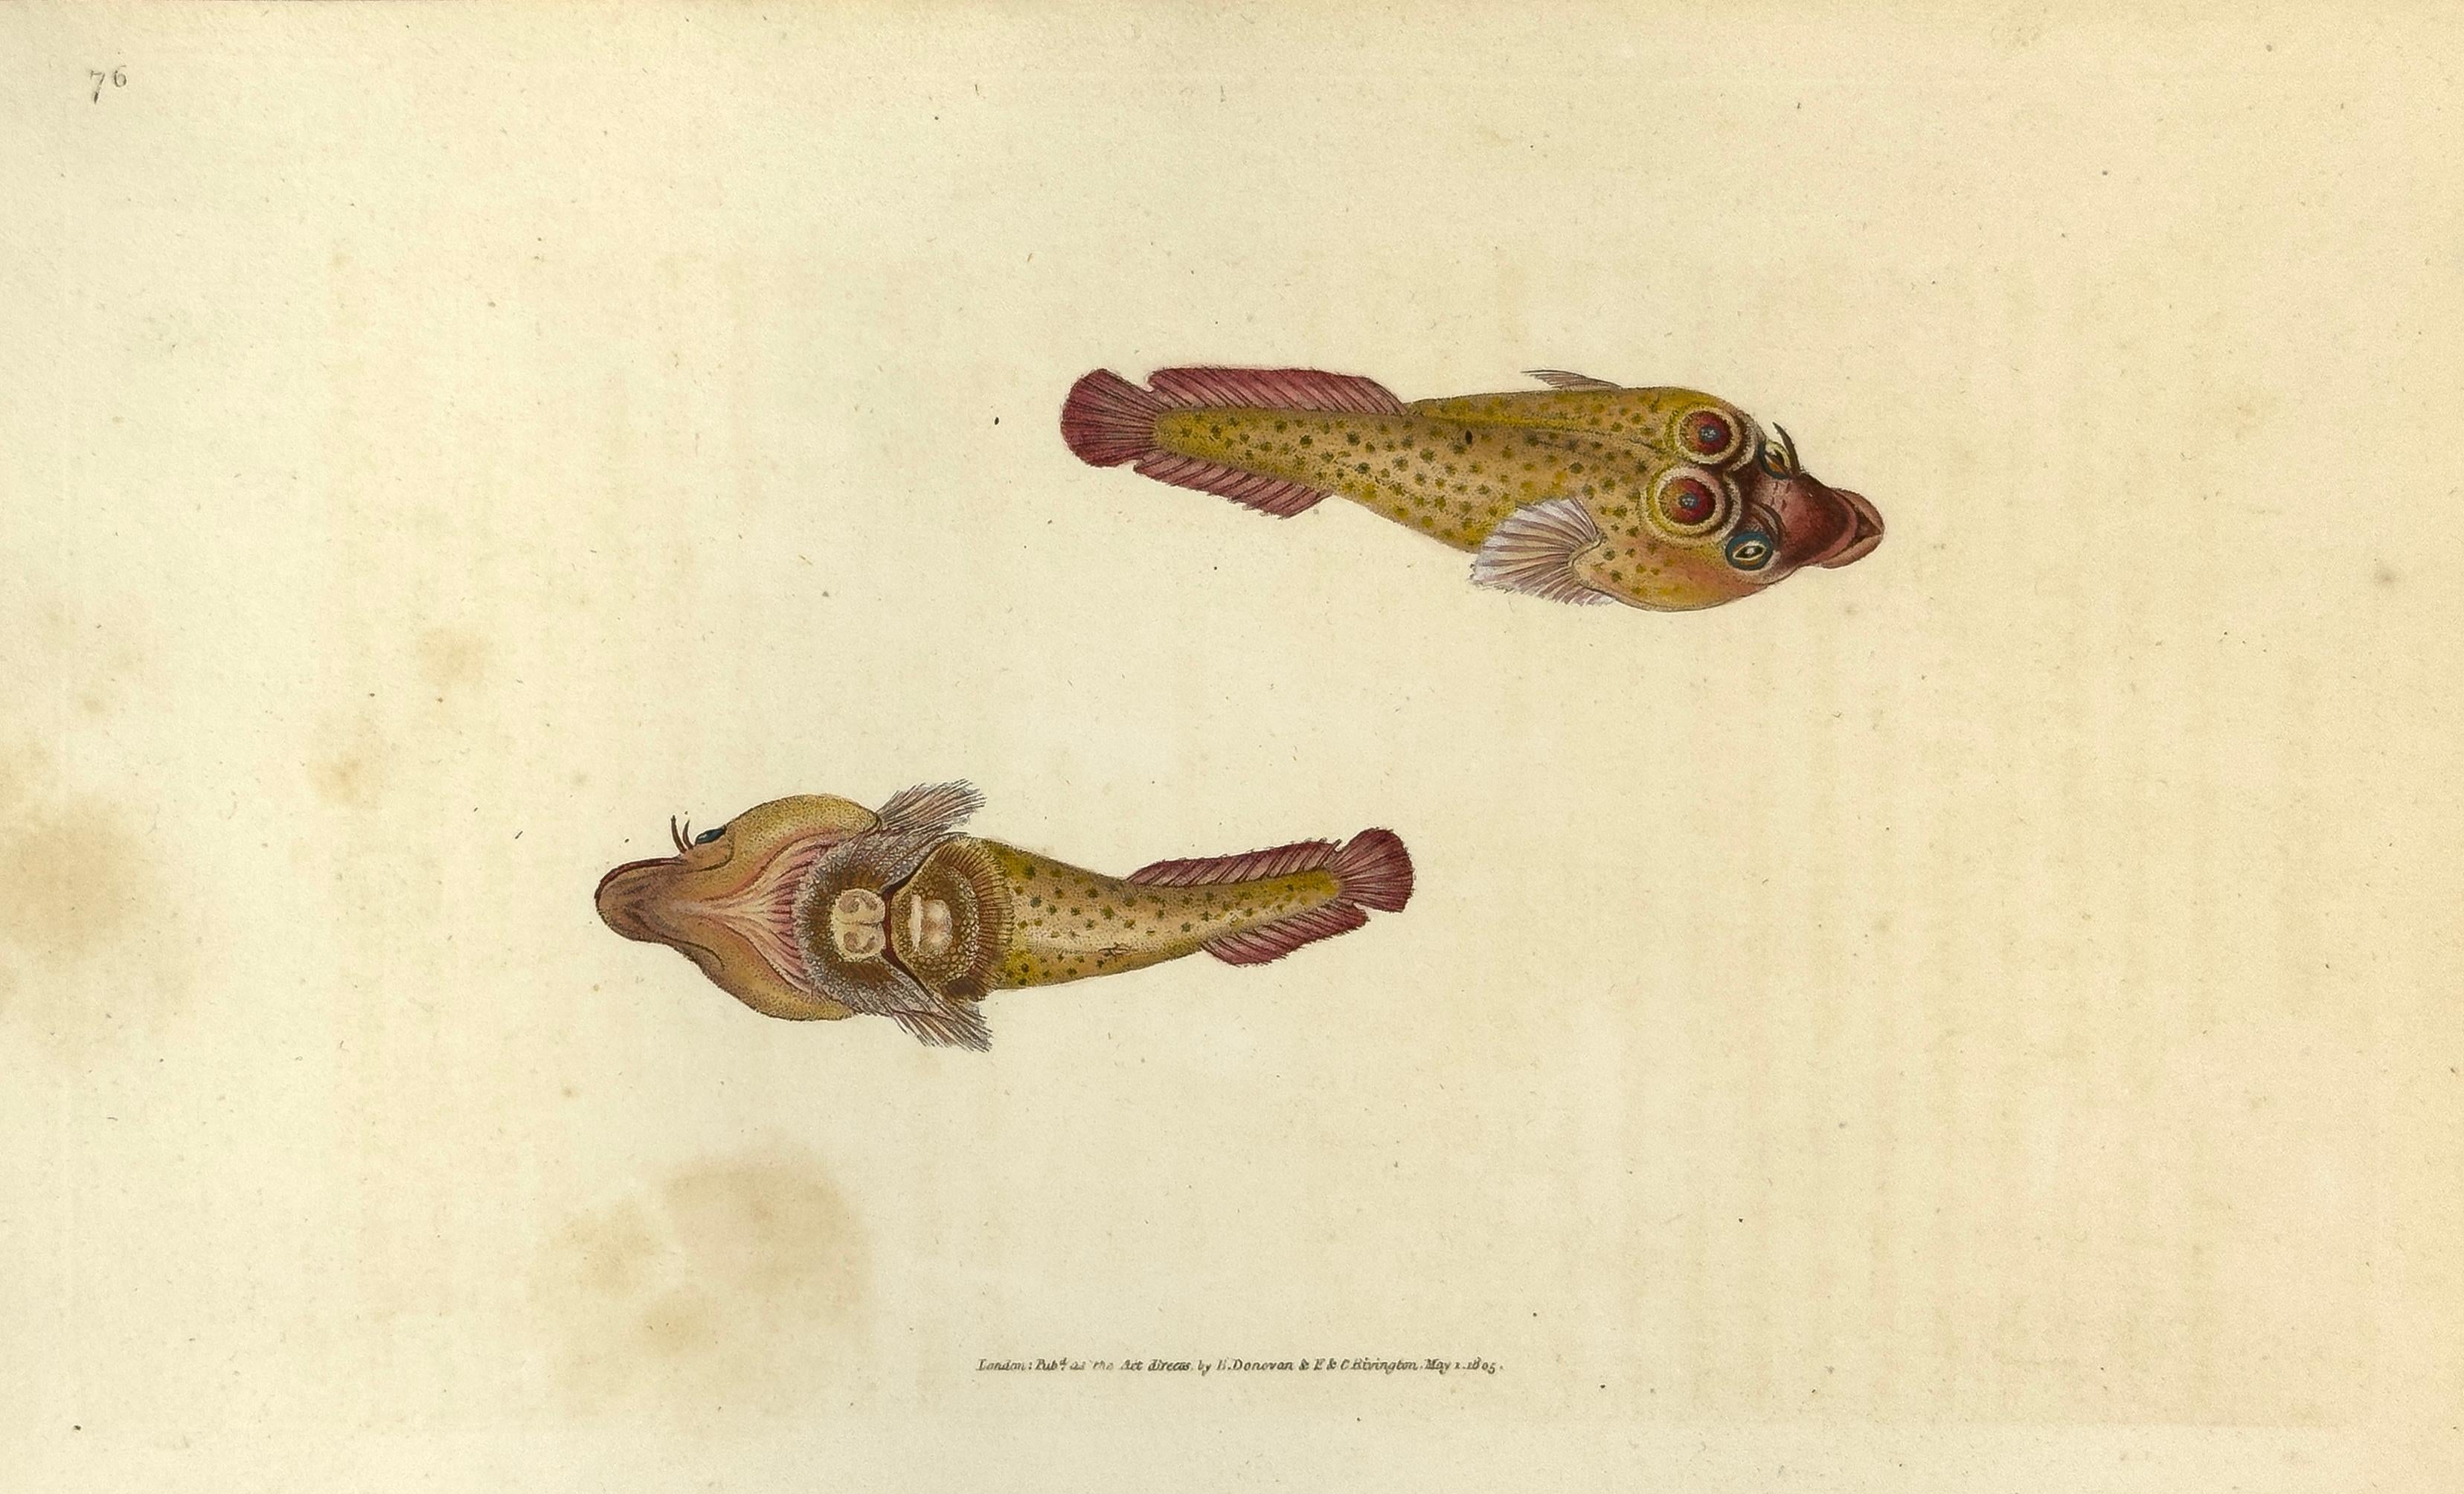 Edward Donovan Animal Print – 76: Zylinderopterus ocellatus, Ausgeteilter Sucker